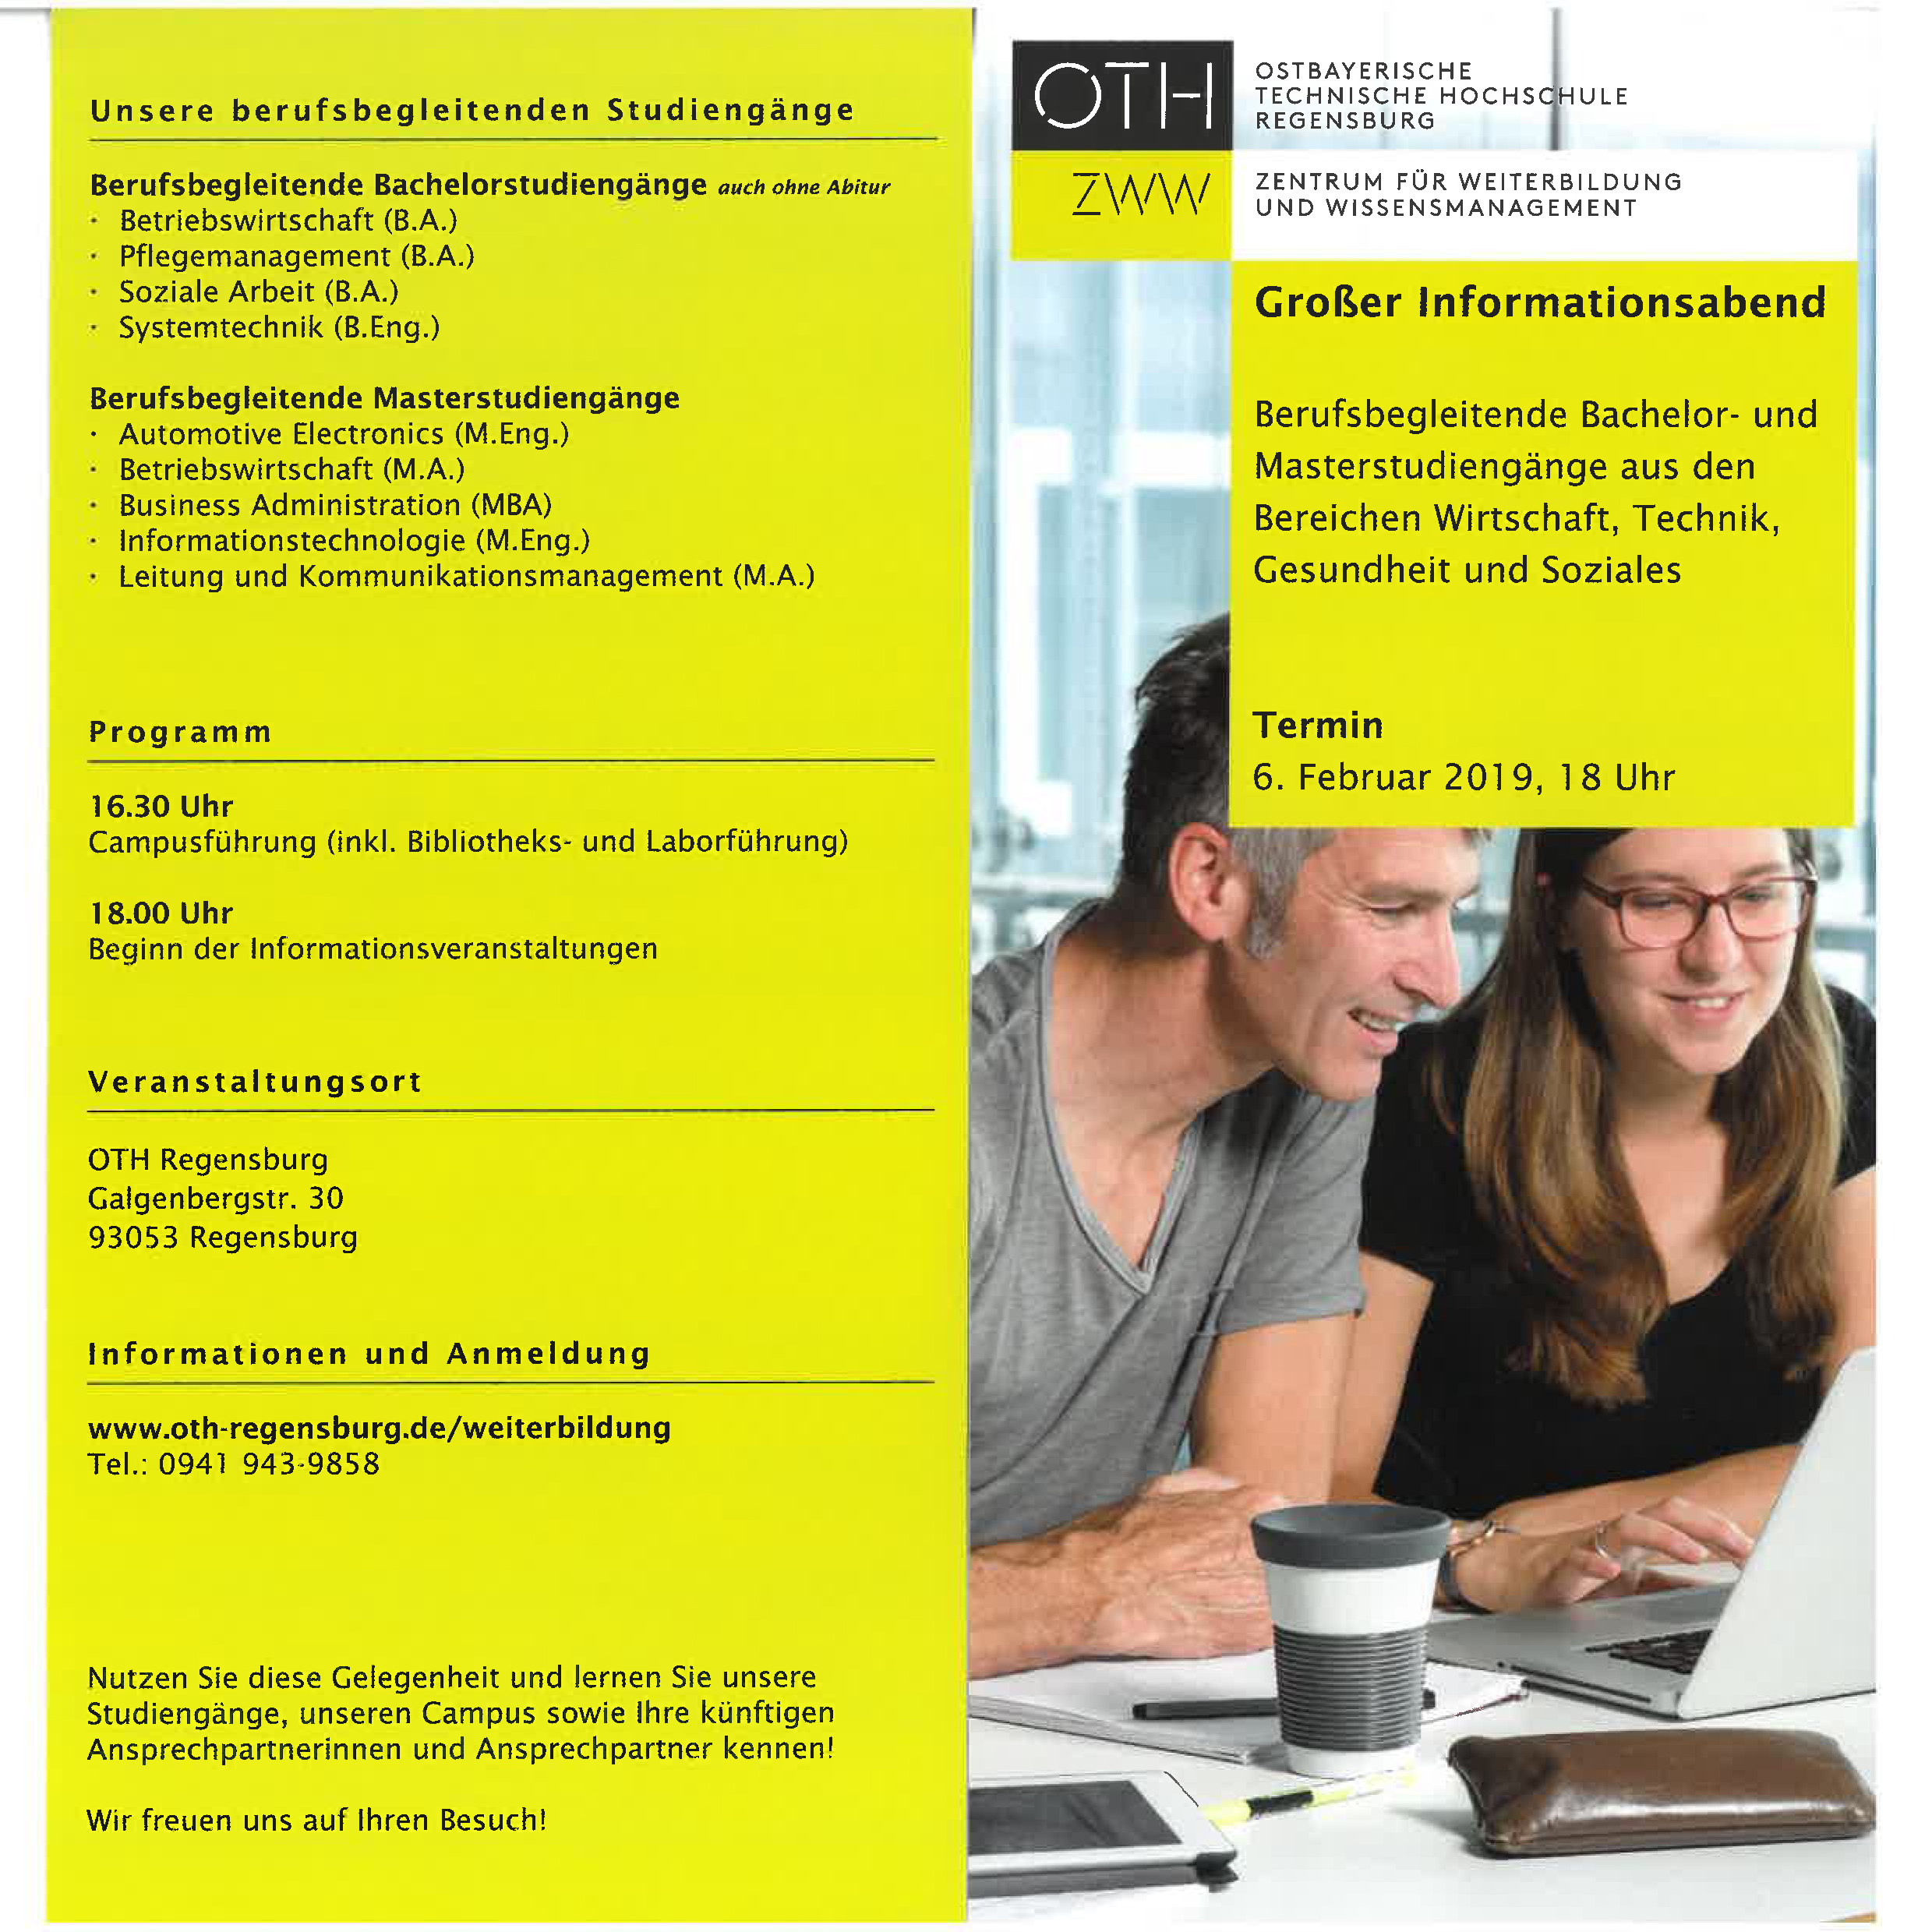 Informationsabend zu berufsbegleitenden Bachelor- und Masterstudiengänge aus den Bereichen Wirtschaft, Technik, Gesundheit und Soziales an der OTH Regensburg am 06.02.2019